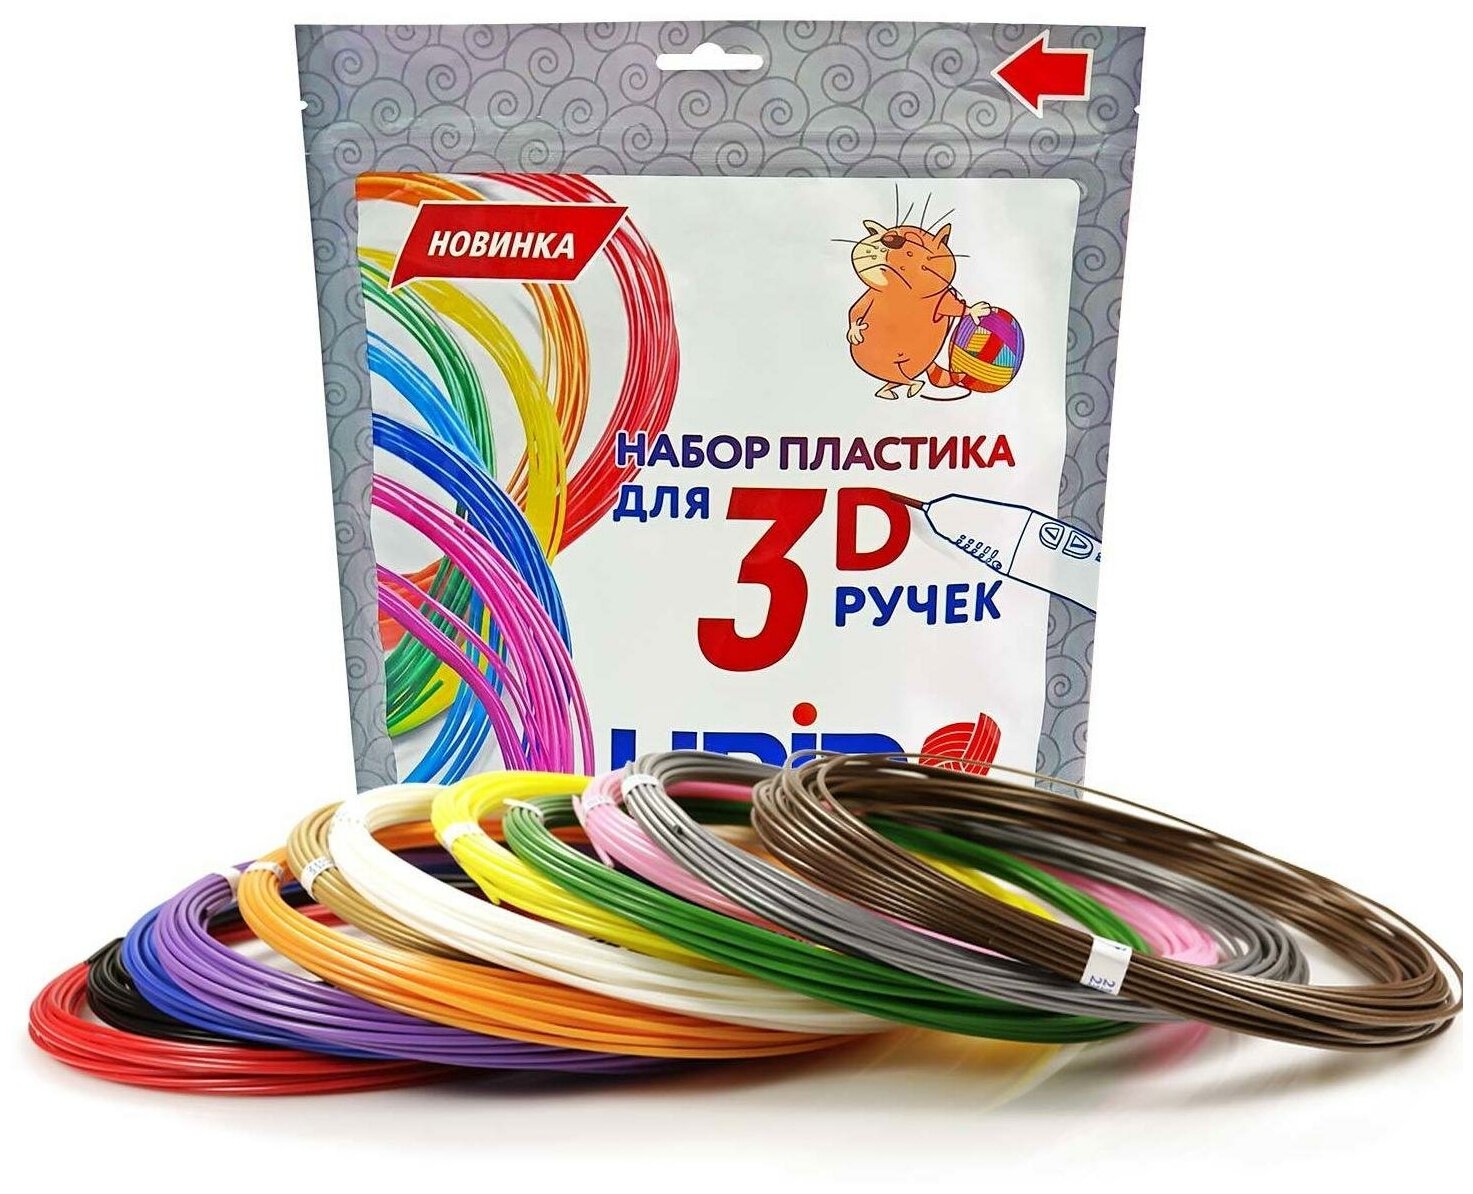 Пластик для 3D ручки UNID ABS пруток UNID 175 12 цветов